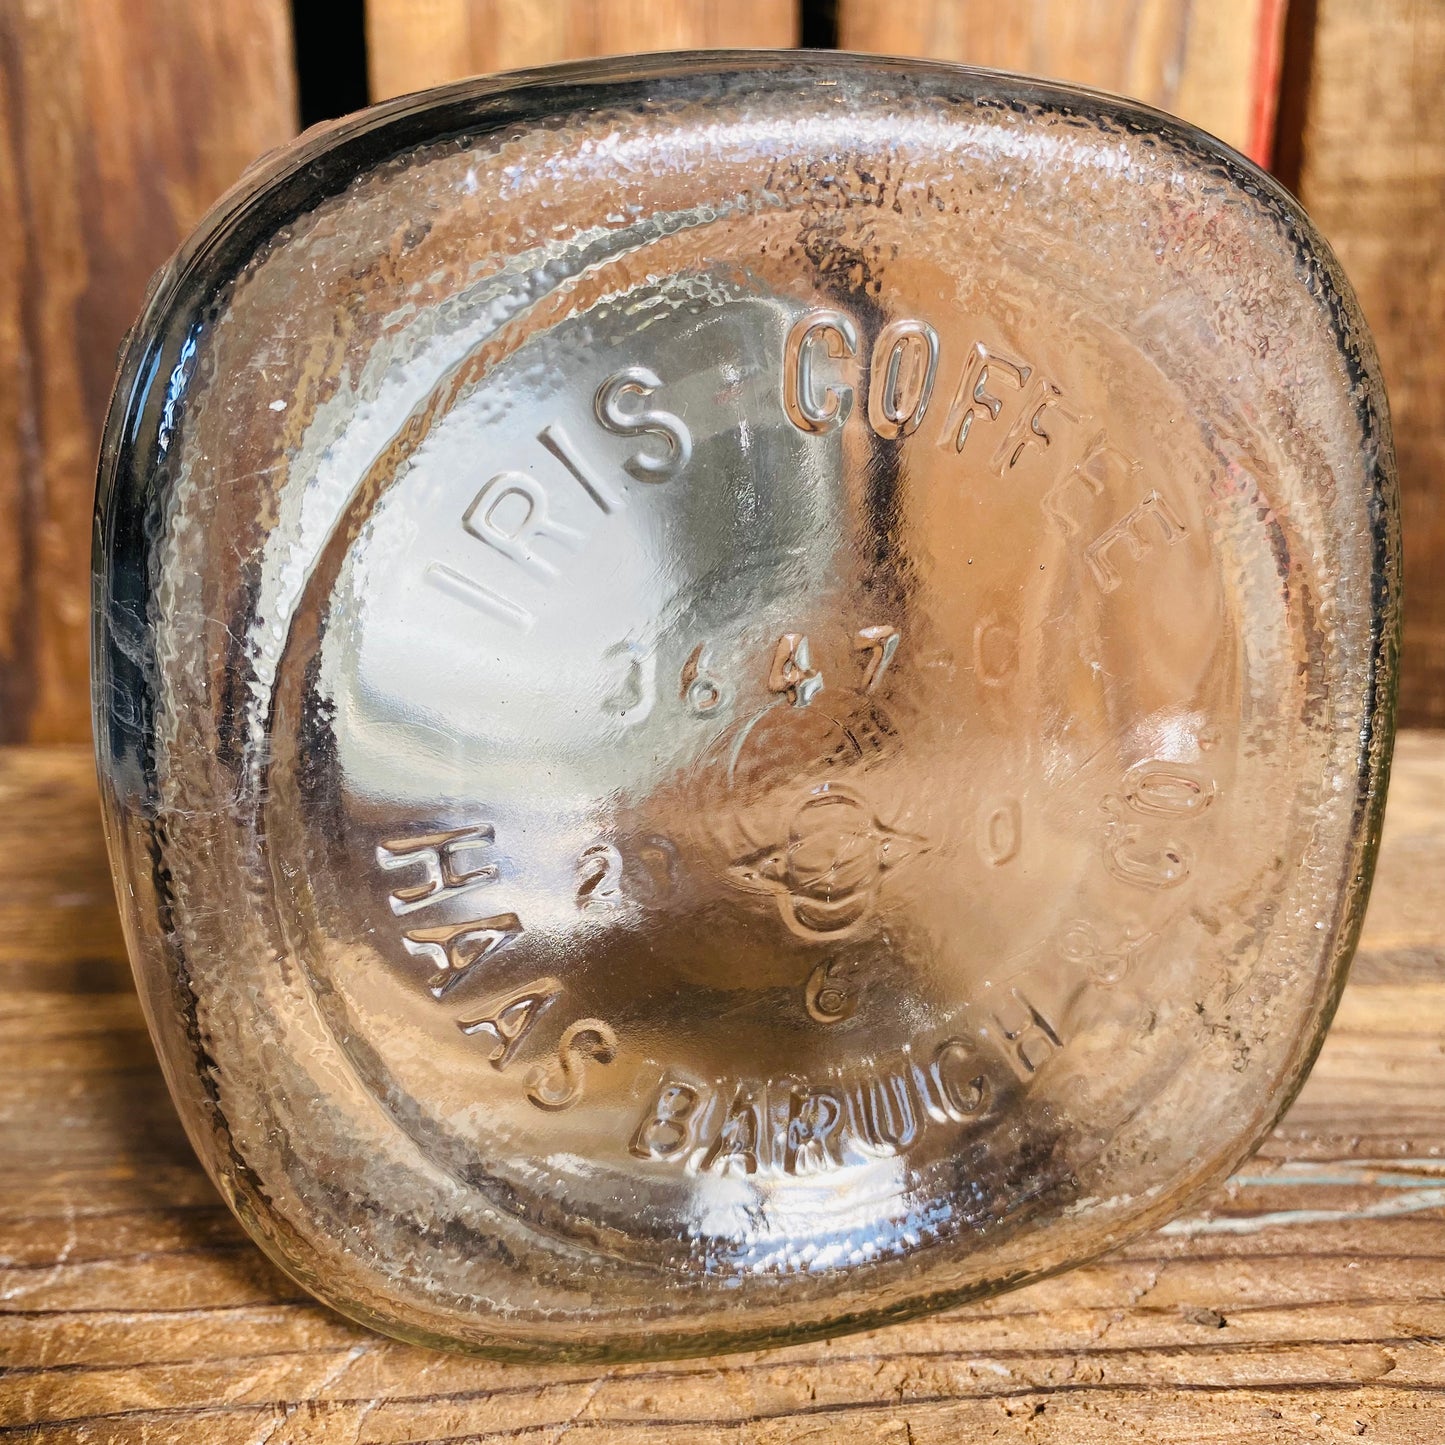 【1930s- USA vintage】IRIS COFFEE ガラスジャー